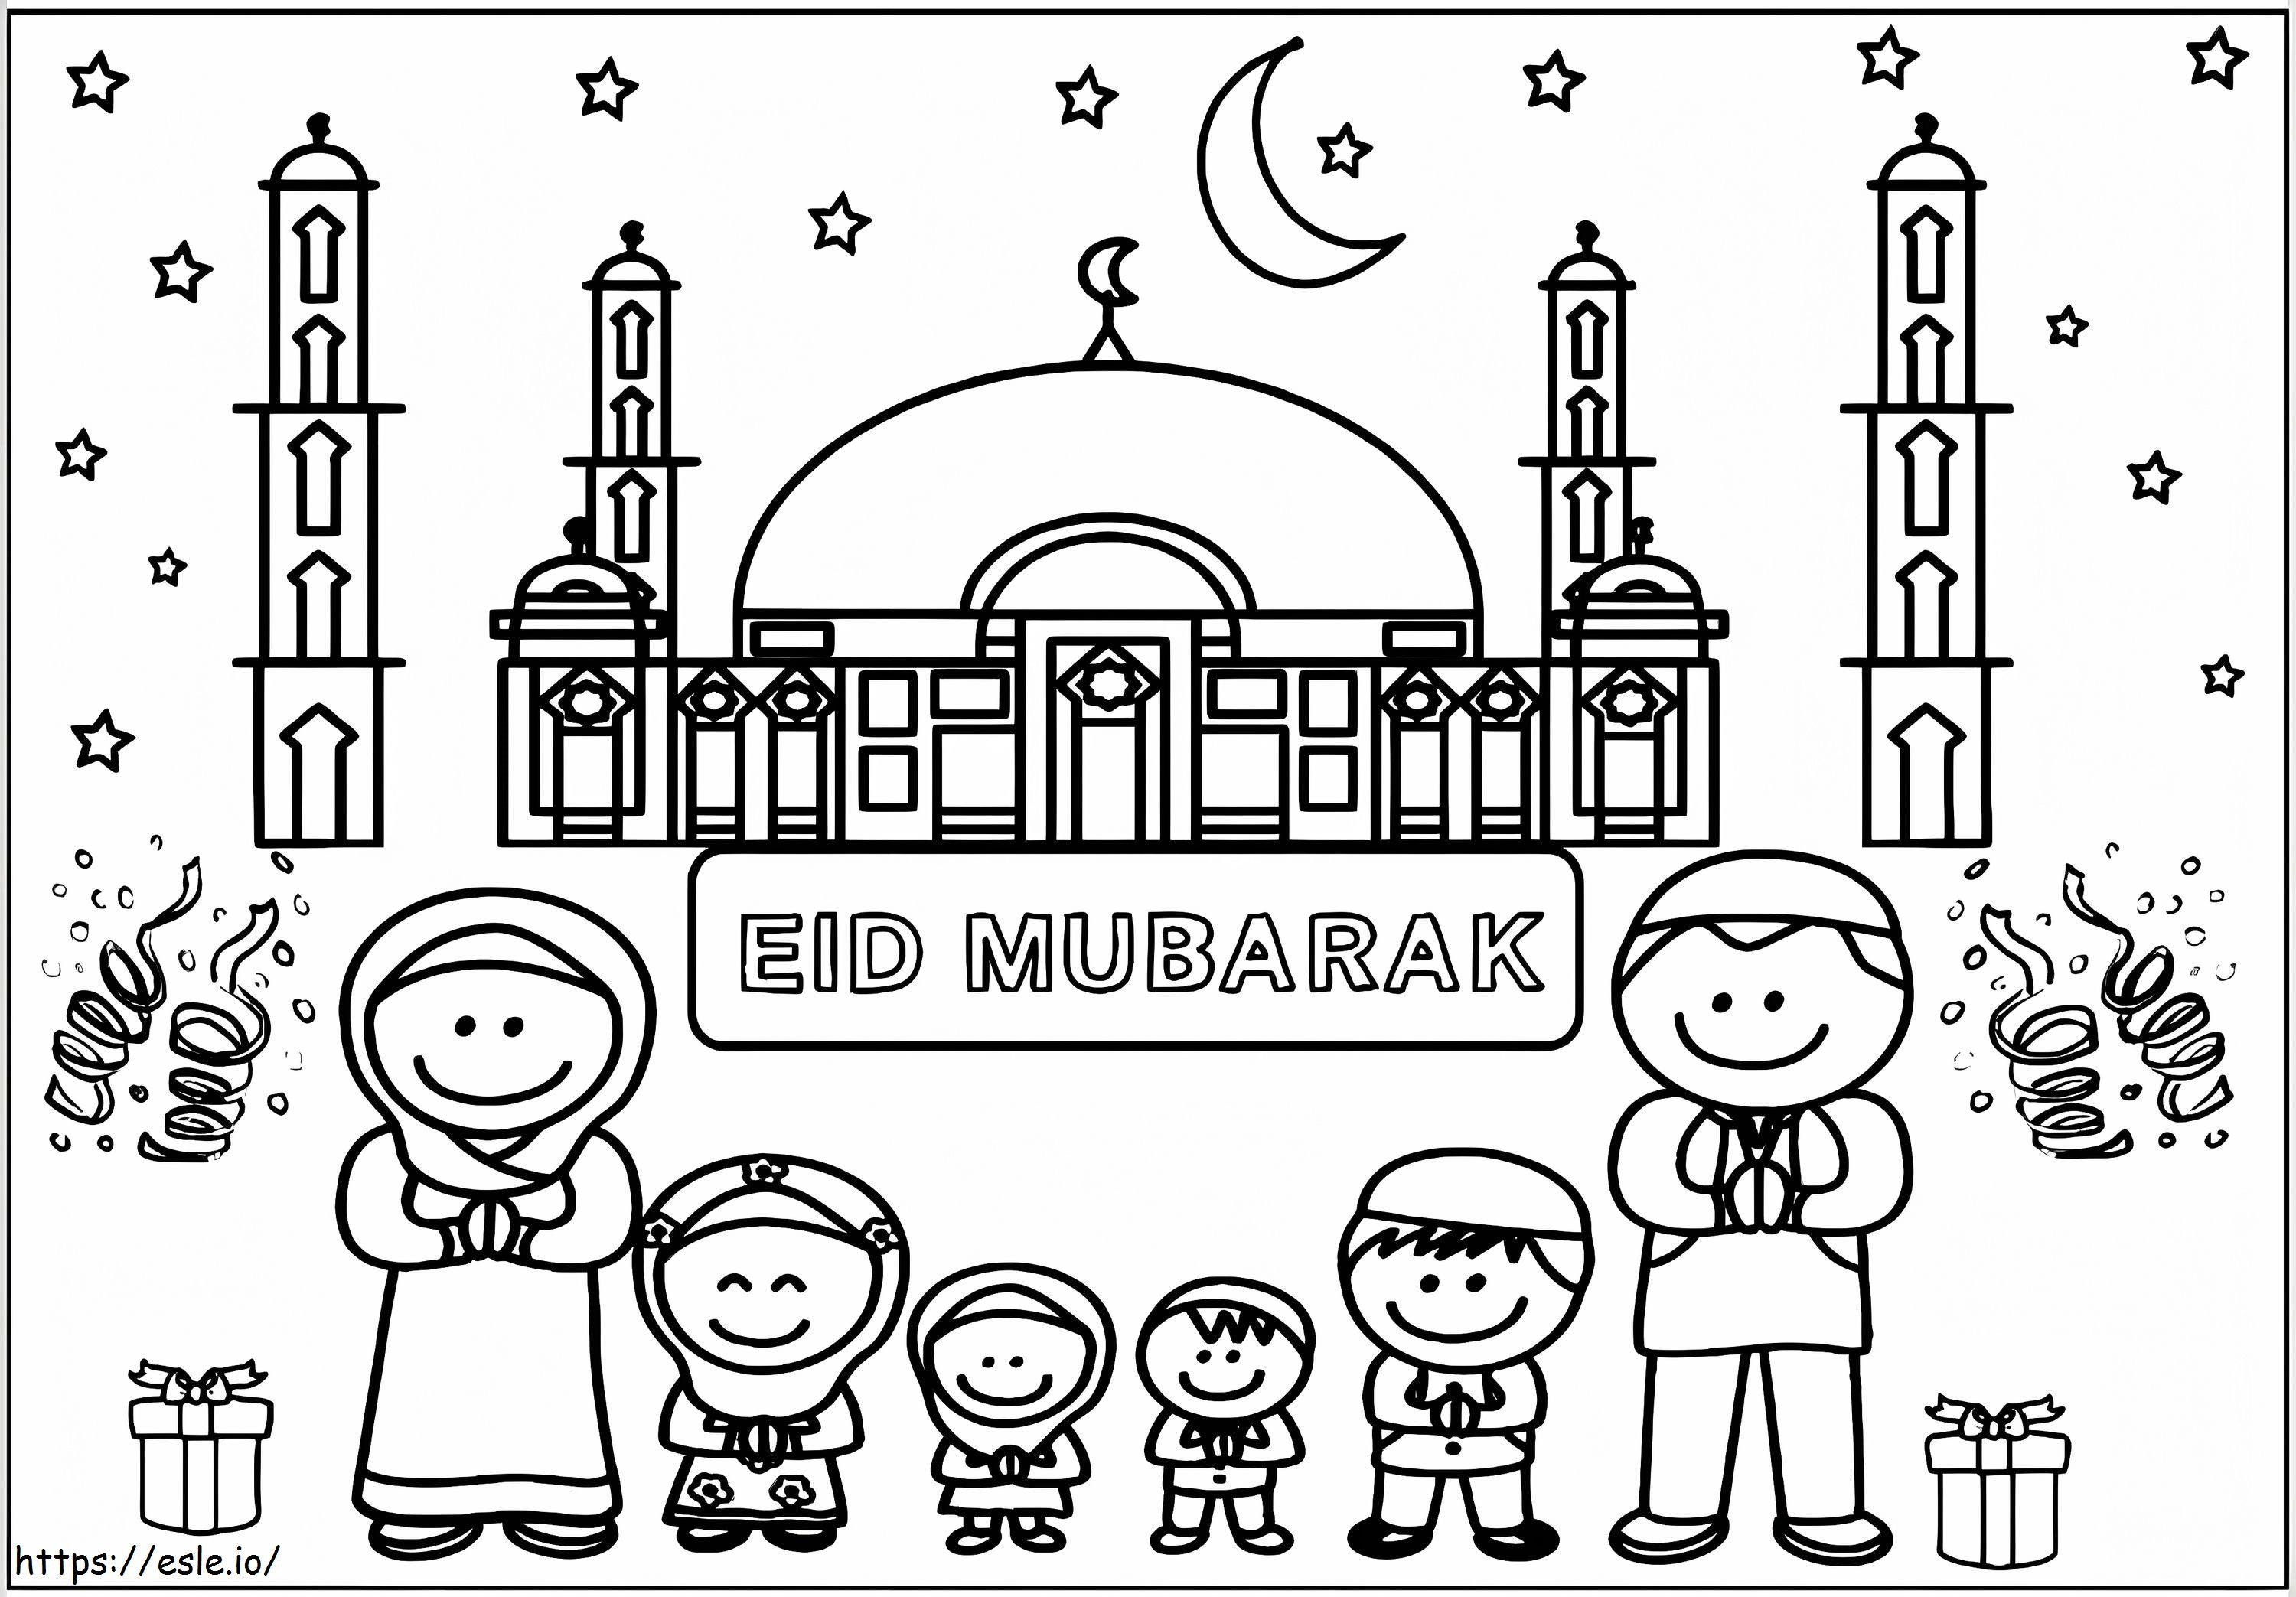 Eid al-Fitr 4 kleurplaat kleurplaat